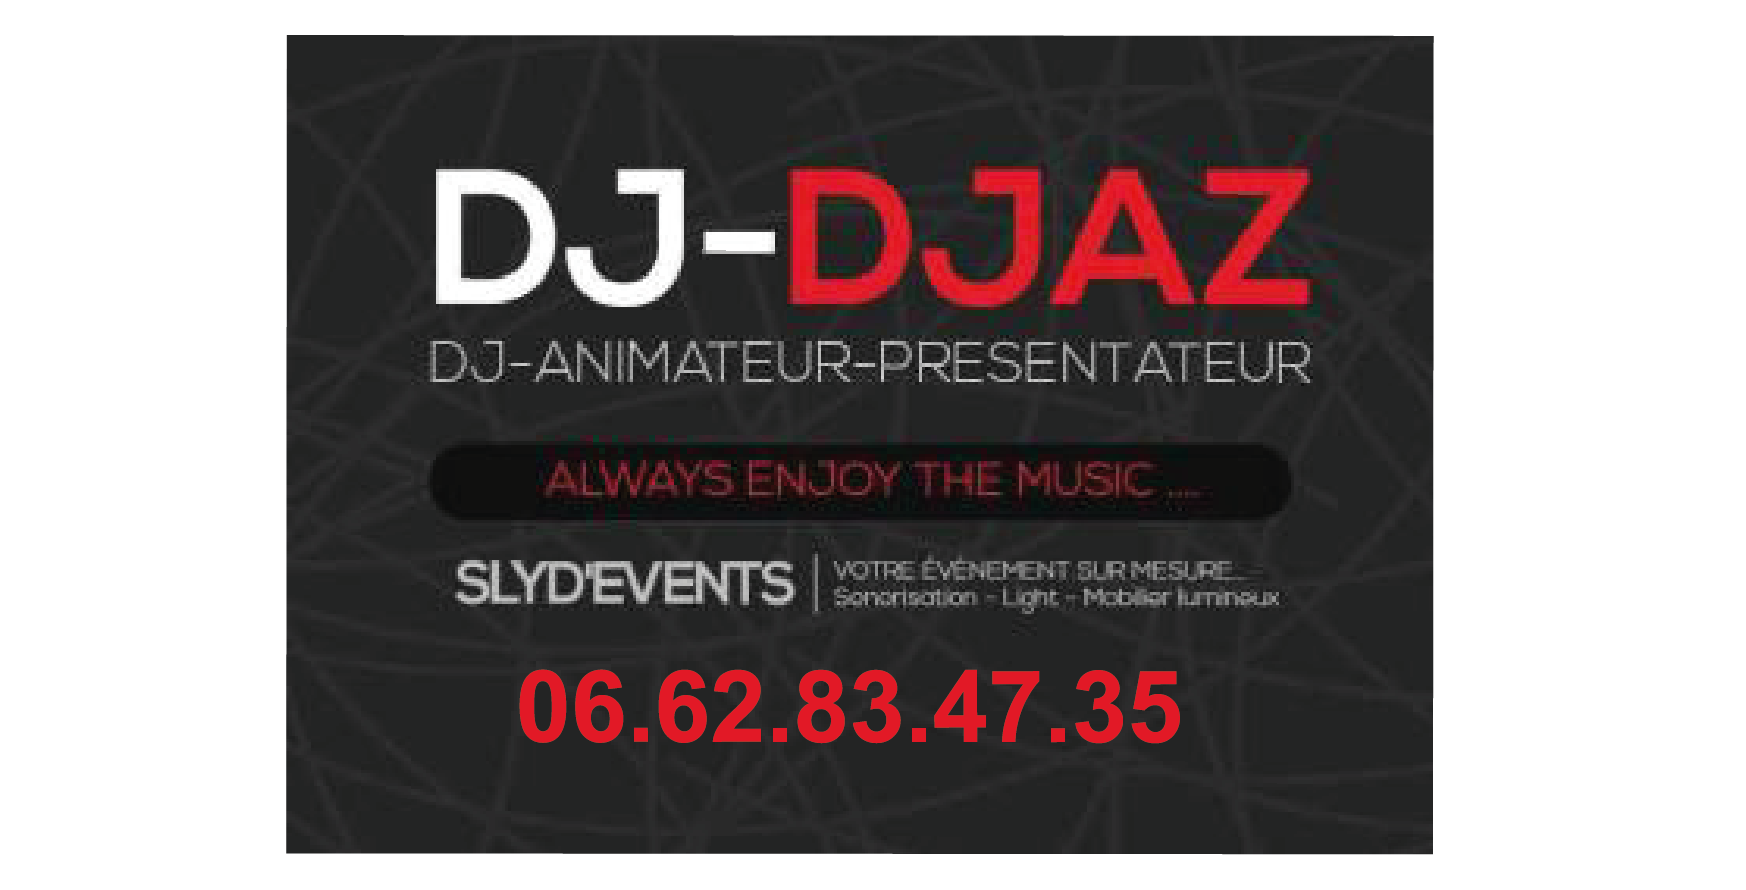 DJ DJAZ 05